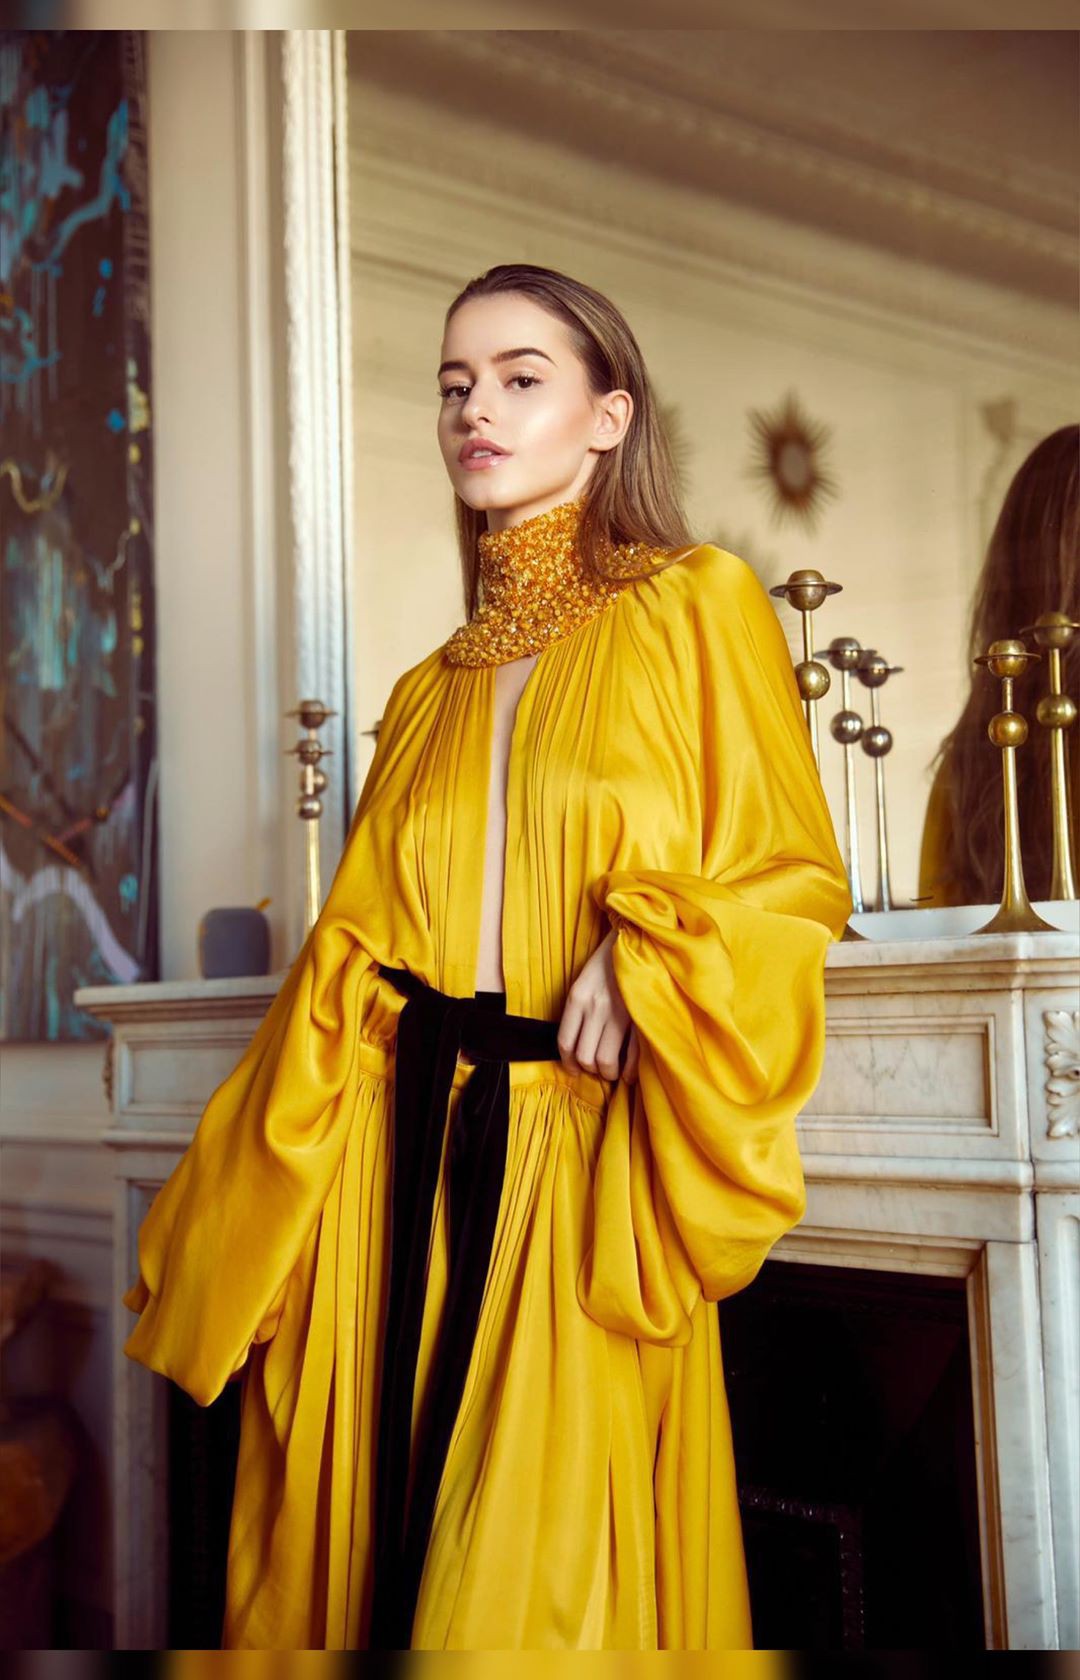 conjunto amarillo a juego con vestido, ideas de vestuario, diseño de moda: Fotografía de moda,  traje amarillo,  Lea Elui TikTok  